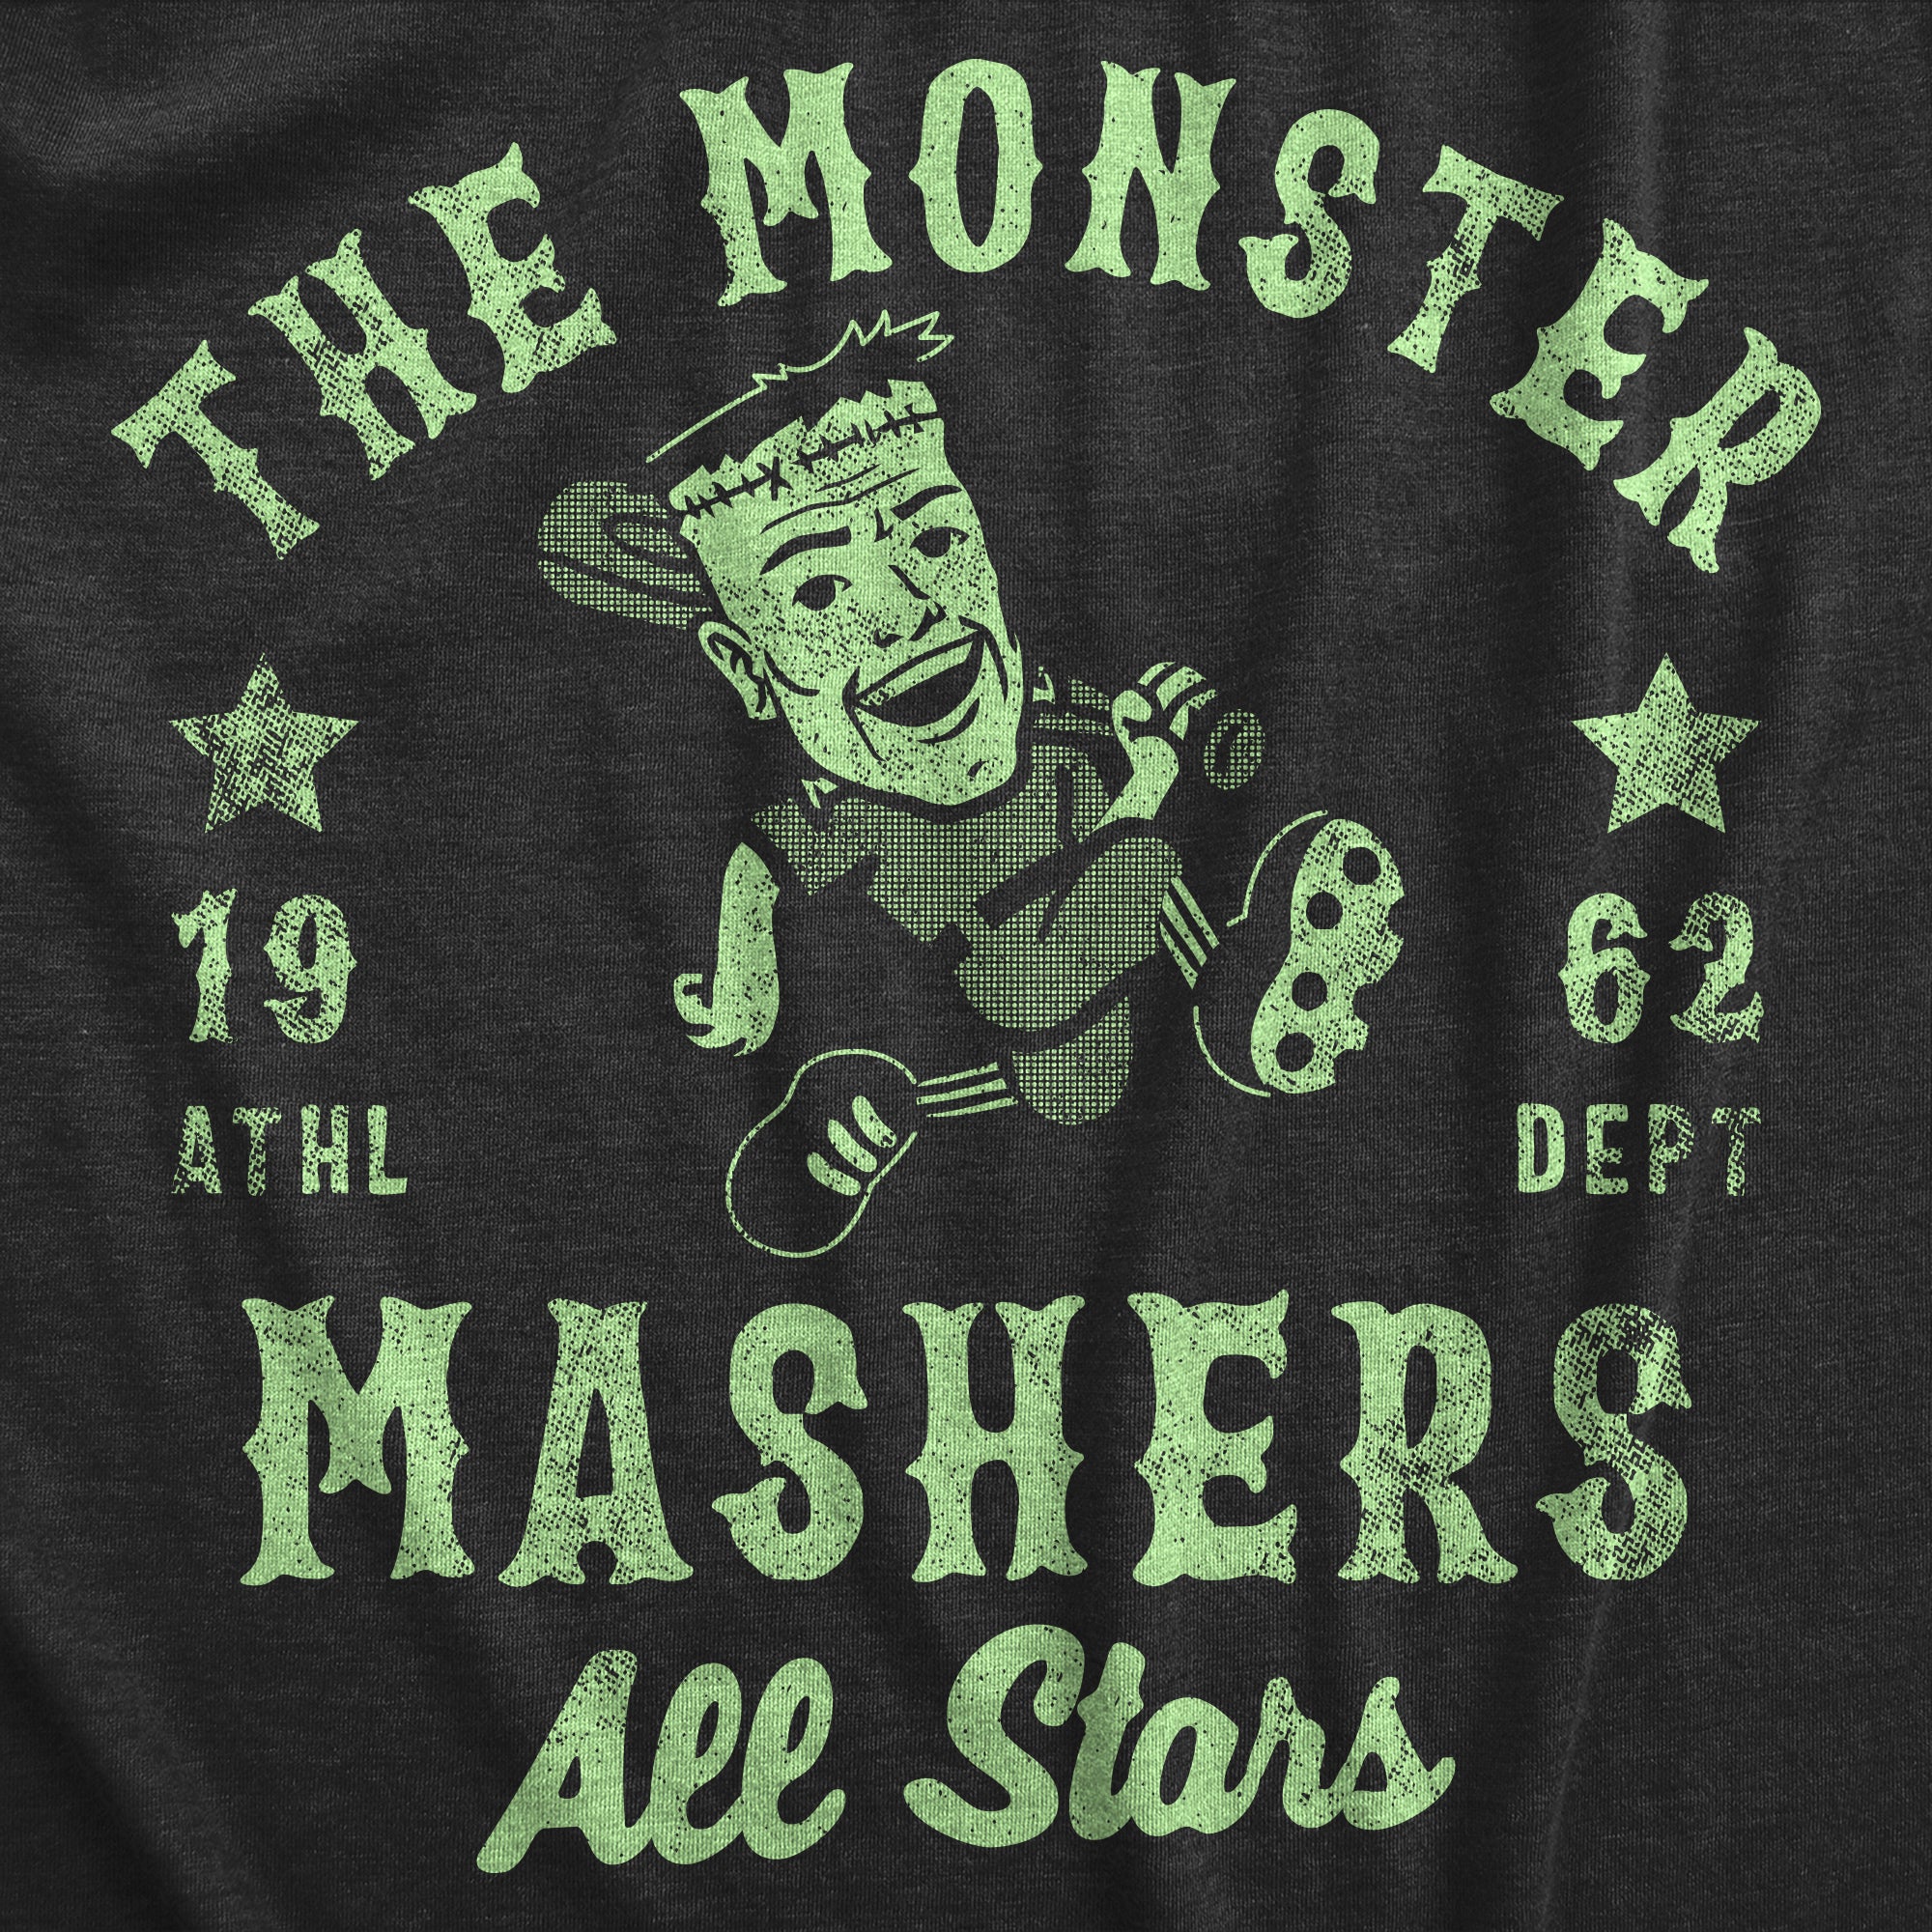 Funny Heather Black - MONSTER The Monster Mashers All Stars Mens T Shirt Nerdy Halloween Baseball Tee